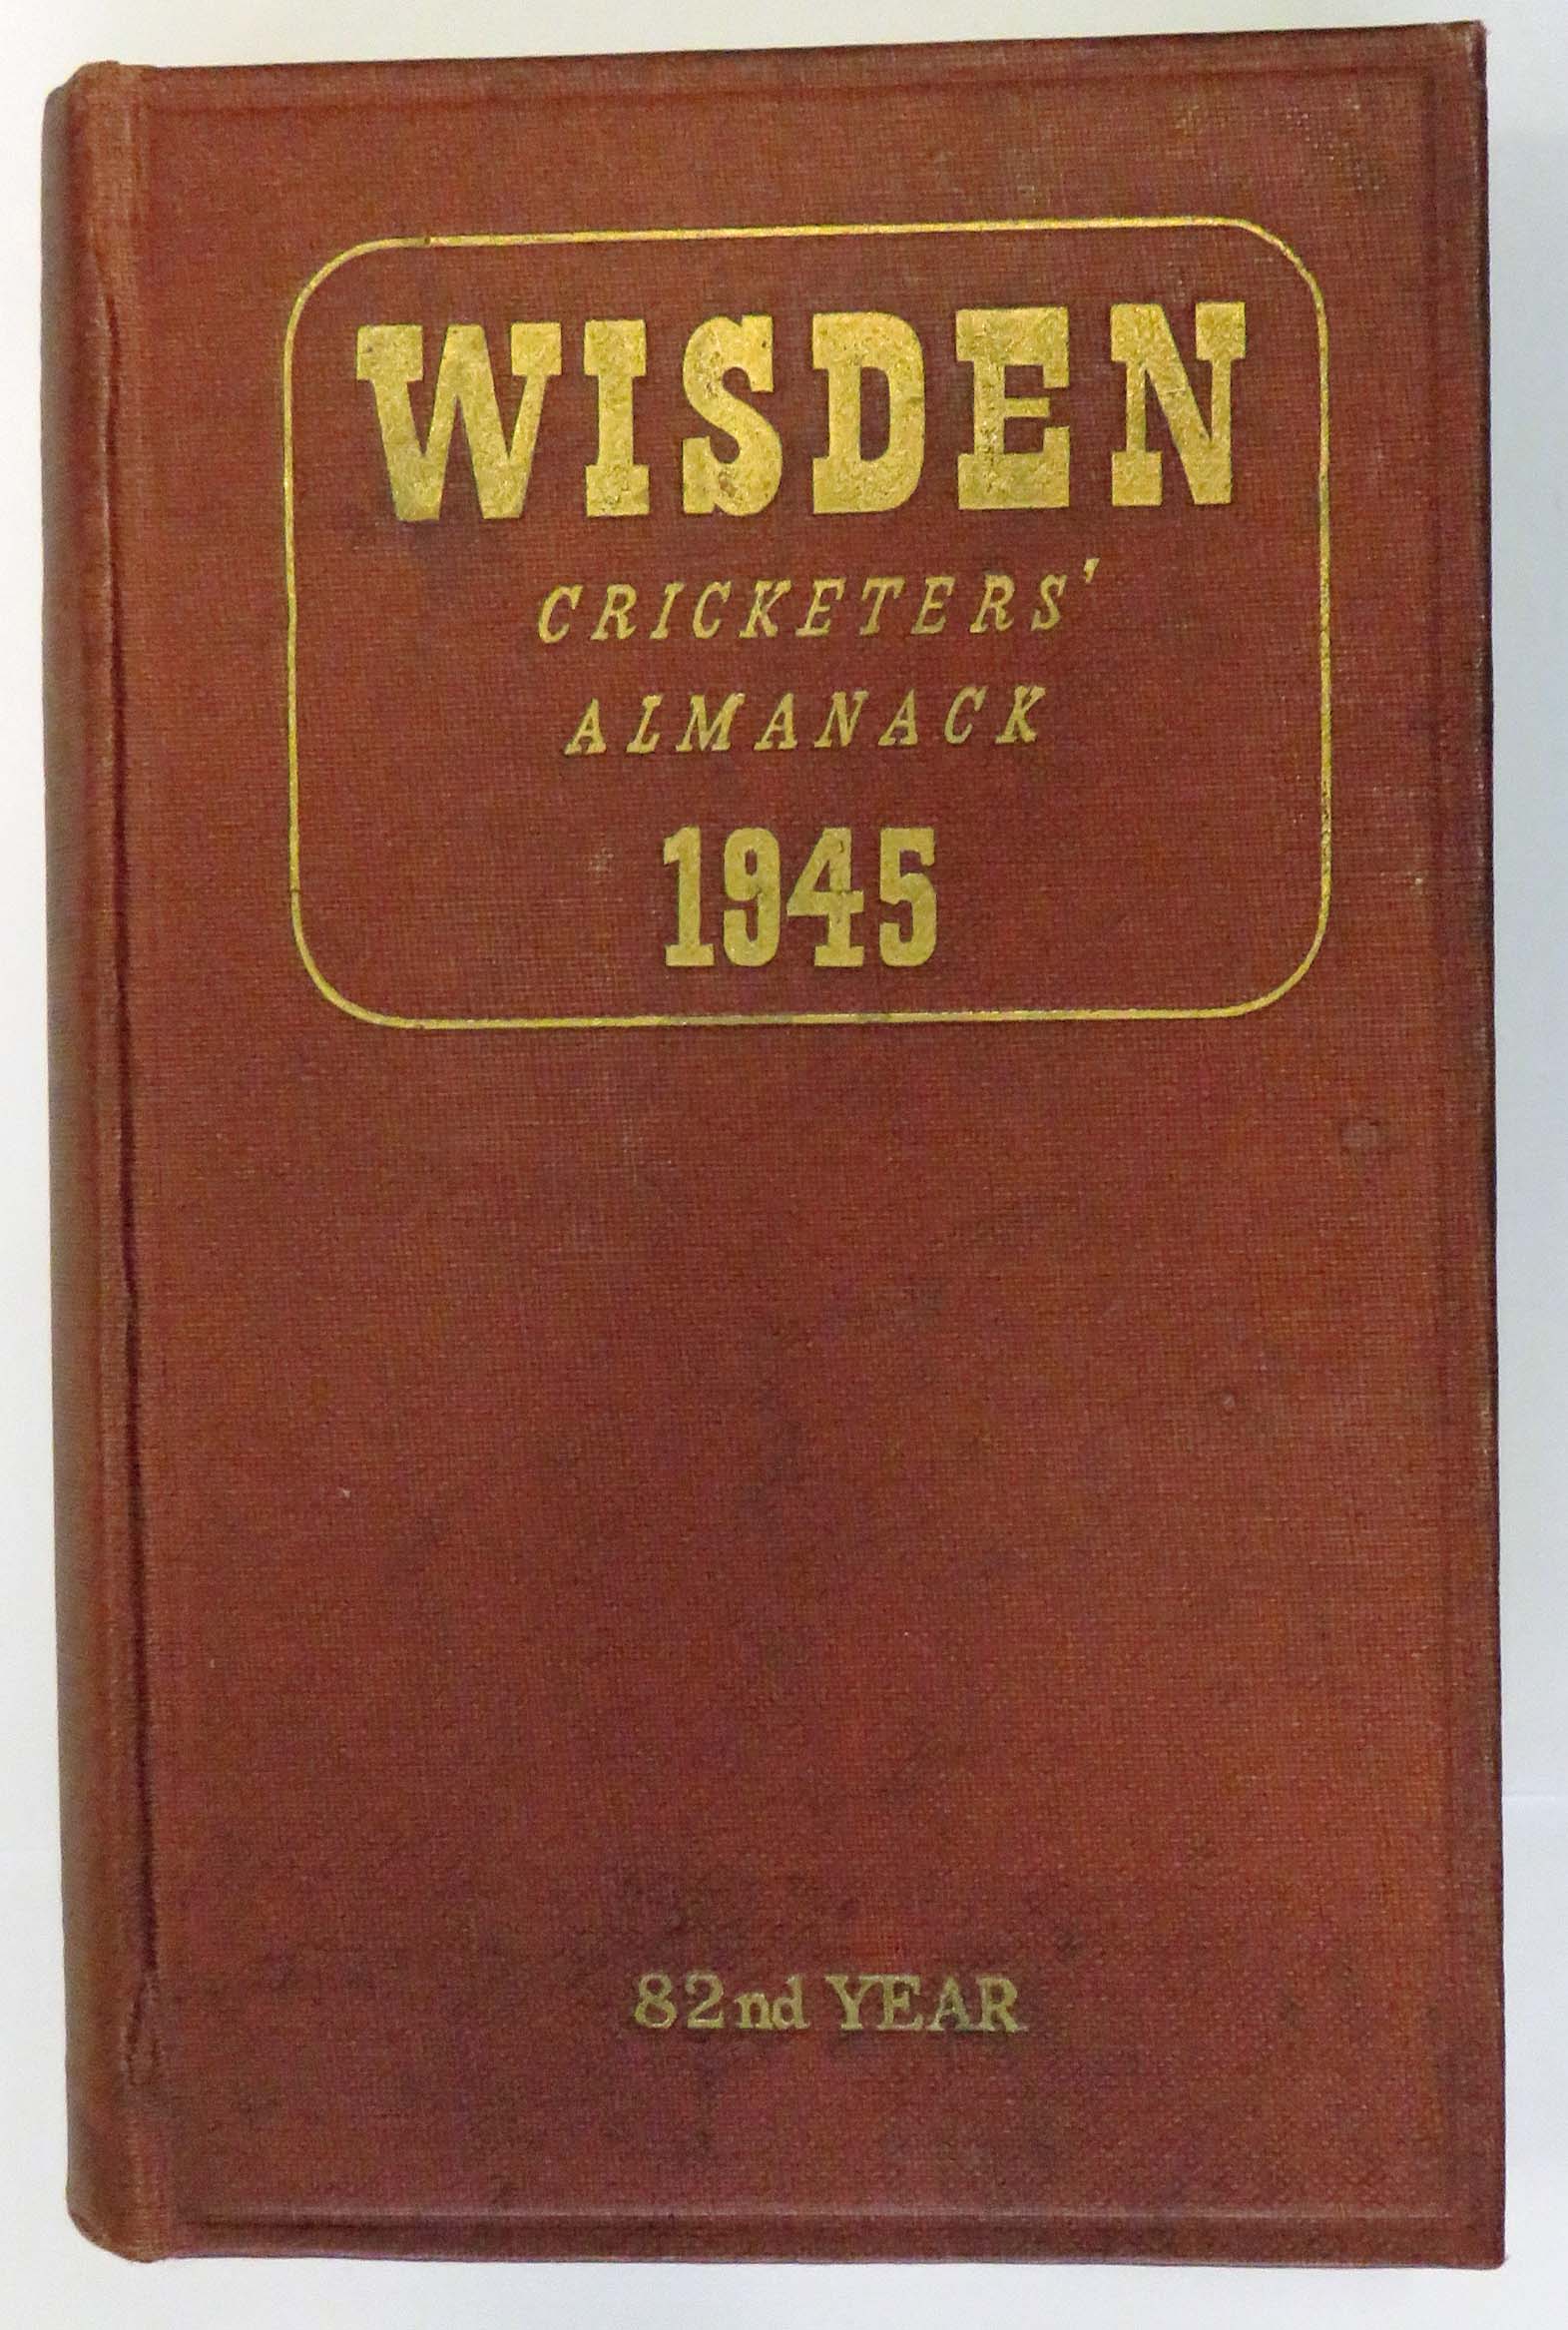 Wisden Cricketers' Almanack 1945 Hardback